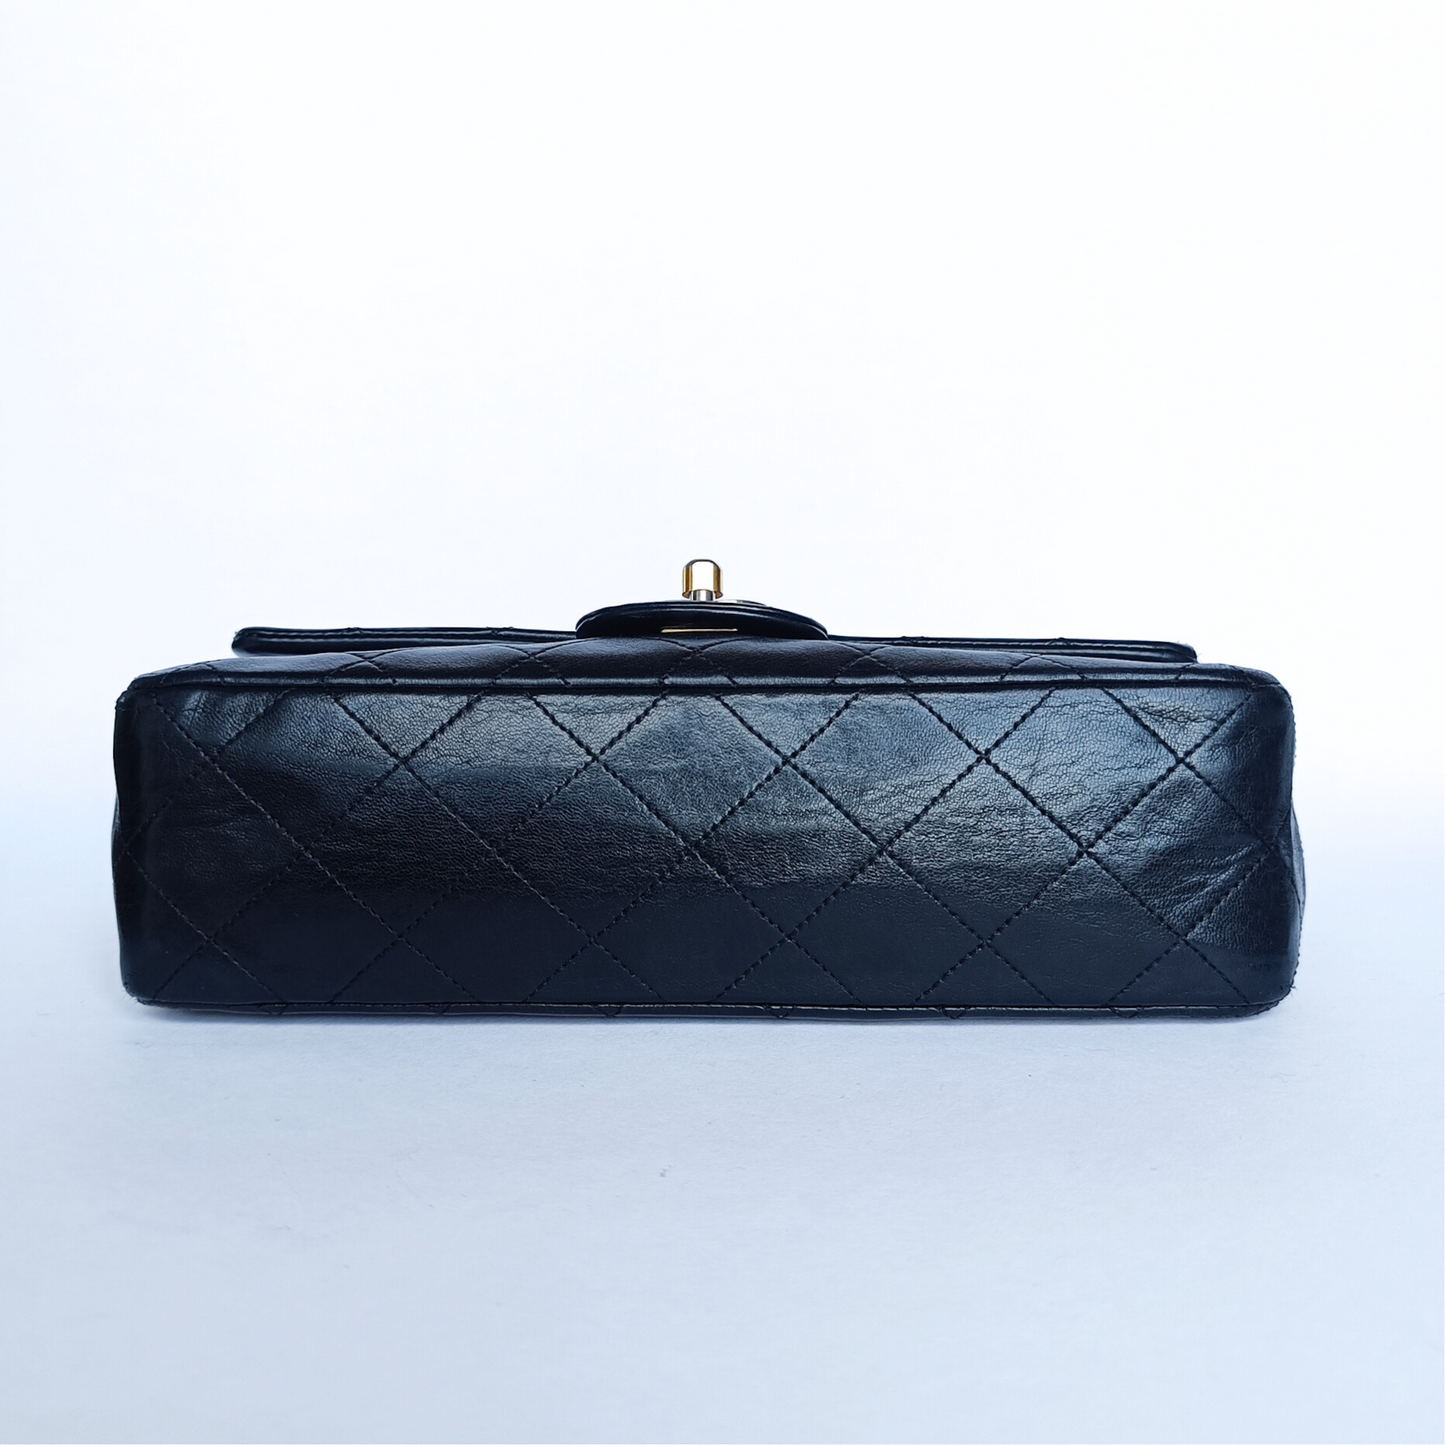 Chanel Chanel Double classique Flap Bag Petit Cuir d'Agneau - Sac porté épaule - Etoile Luxury Vintage